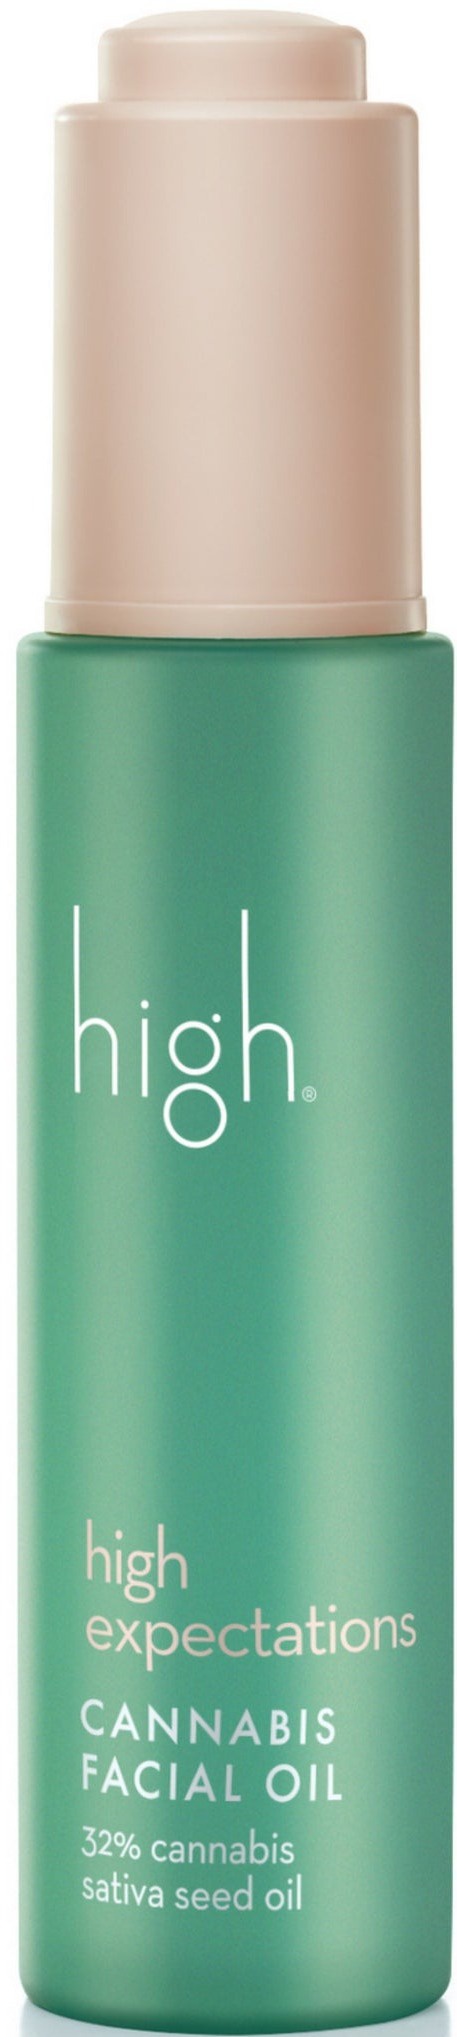 High Beauty High Expectations Cannabis Facial Oil 32% Cannabis Sativa Seed Oil